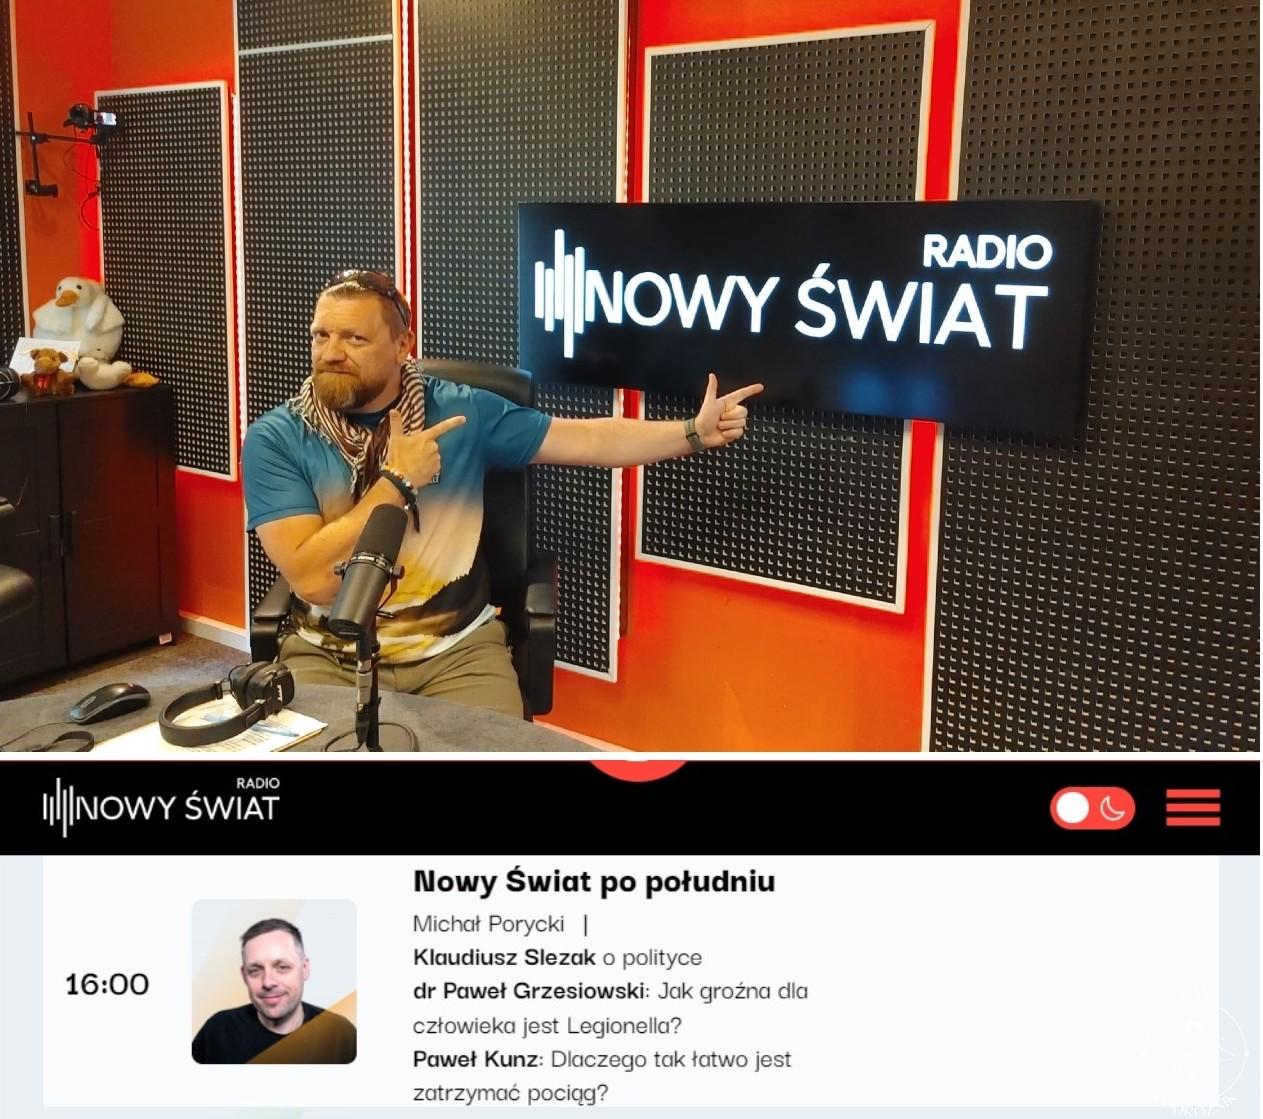 Radio Nowy Świat (c) Paweł Kunz, panpodroznik.com